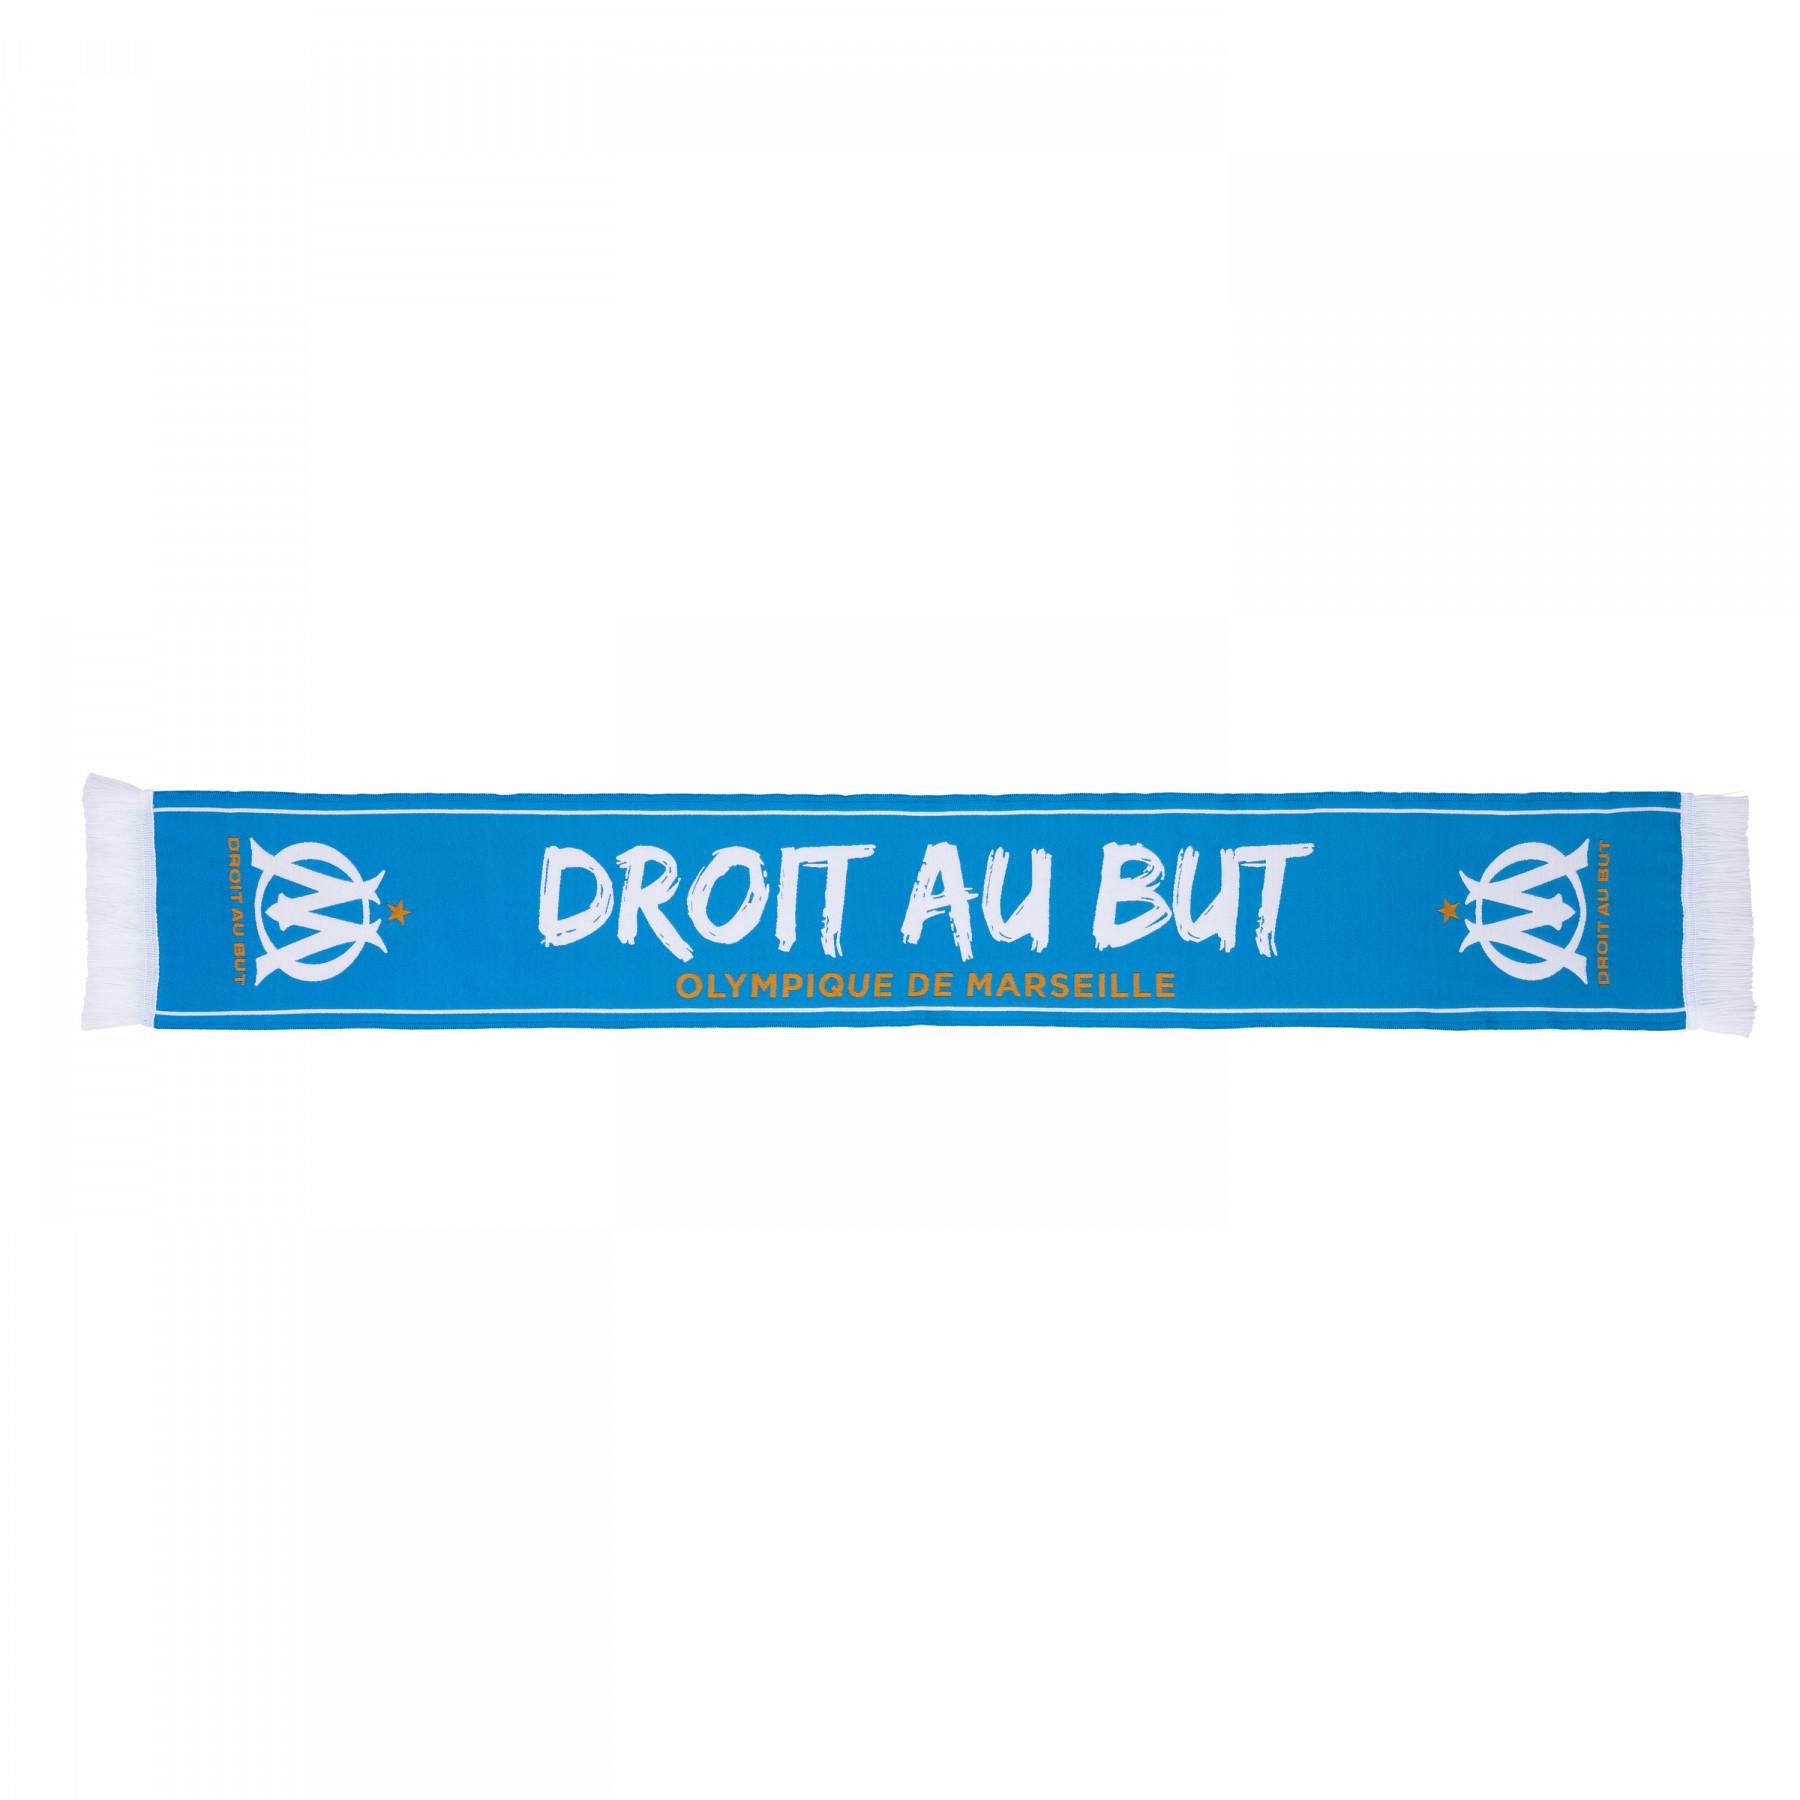 Halstuch Olympique de Marseille Droit au but